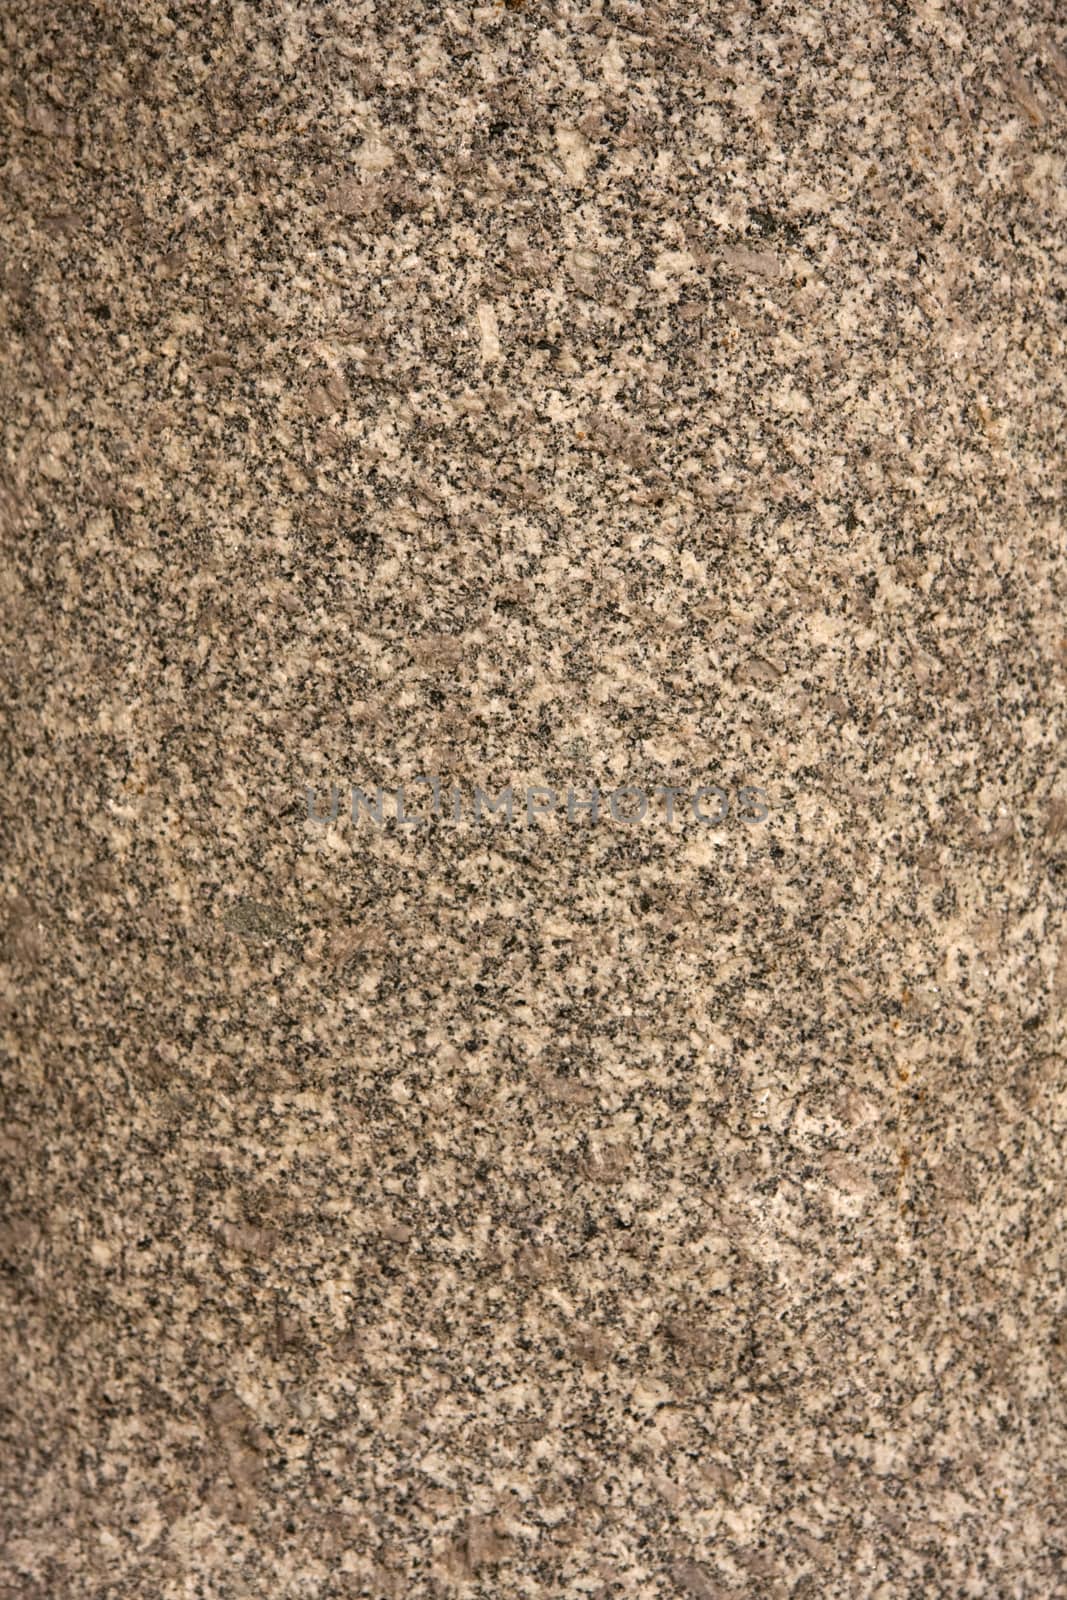 Grainy Granite texture background